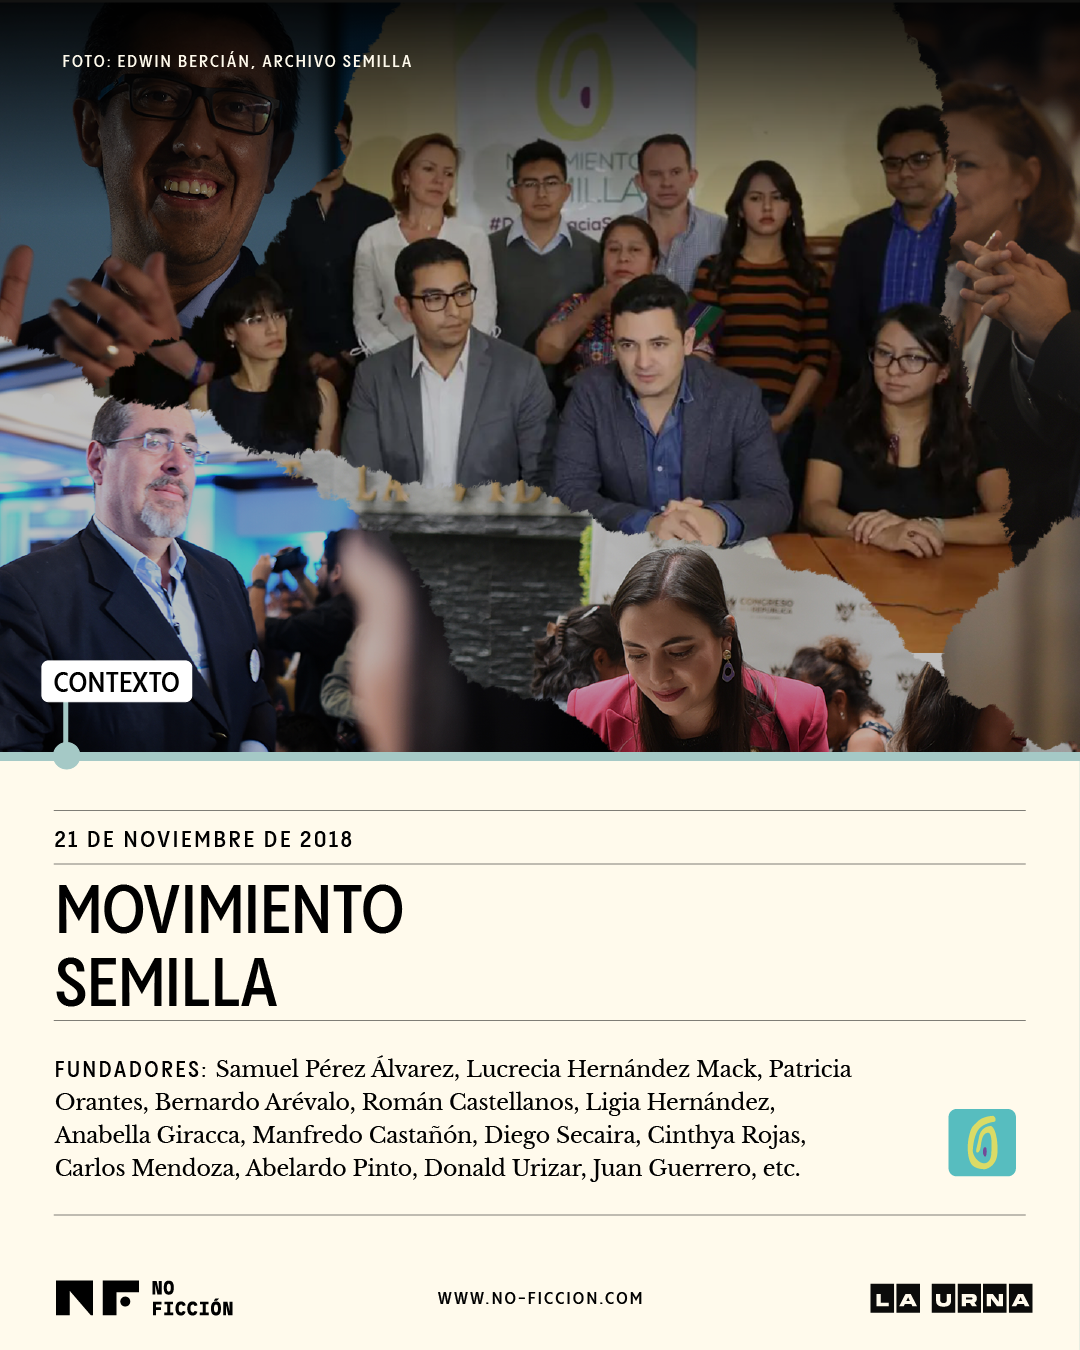 Semilla se presenta por segunda vez a unas elecciones generales en Guatemala.